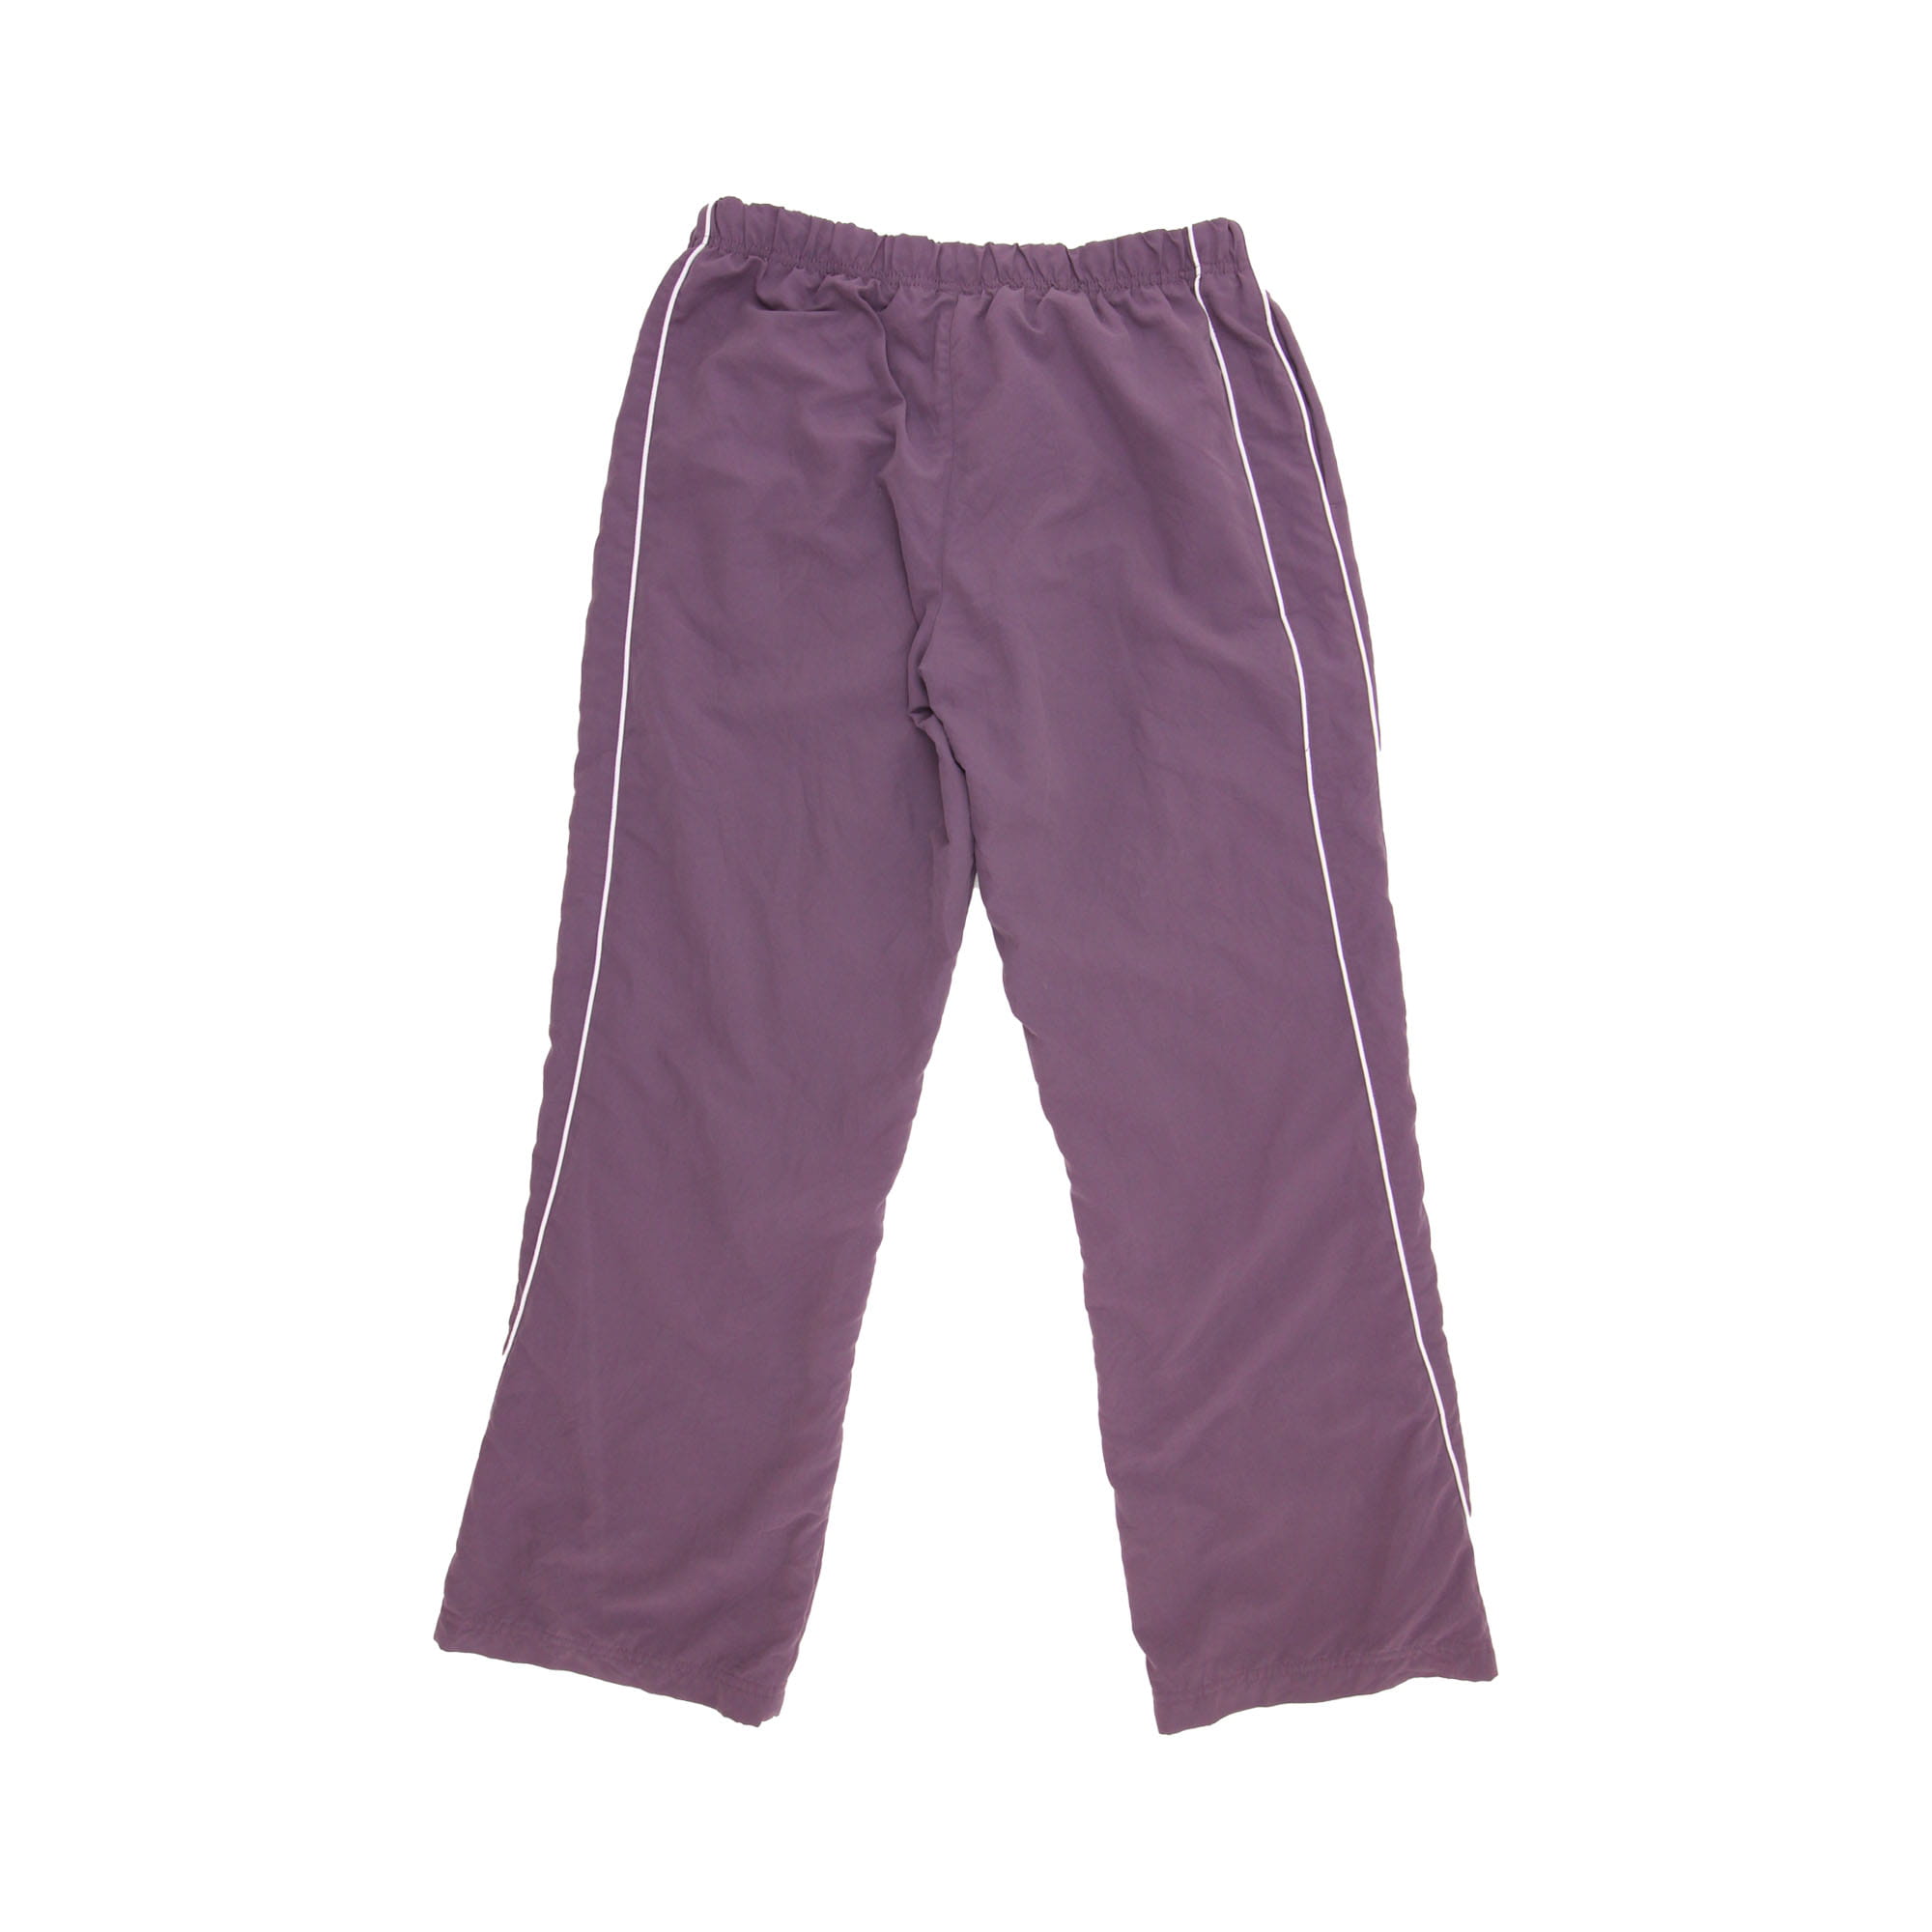 Reebok Track Pants Purple -  M/L